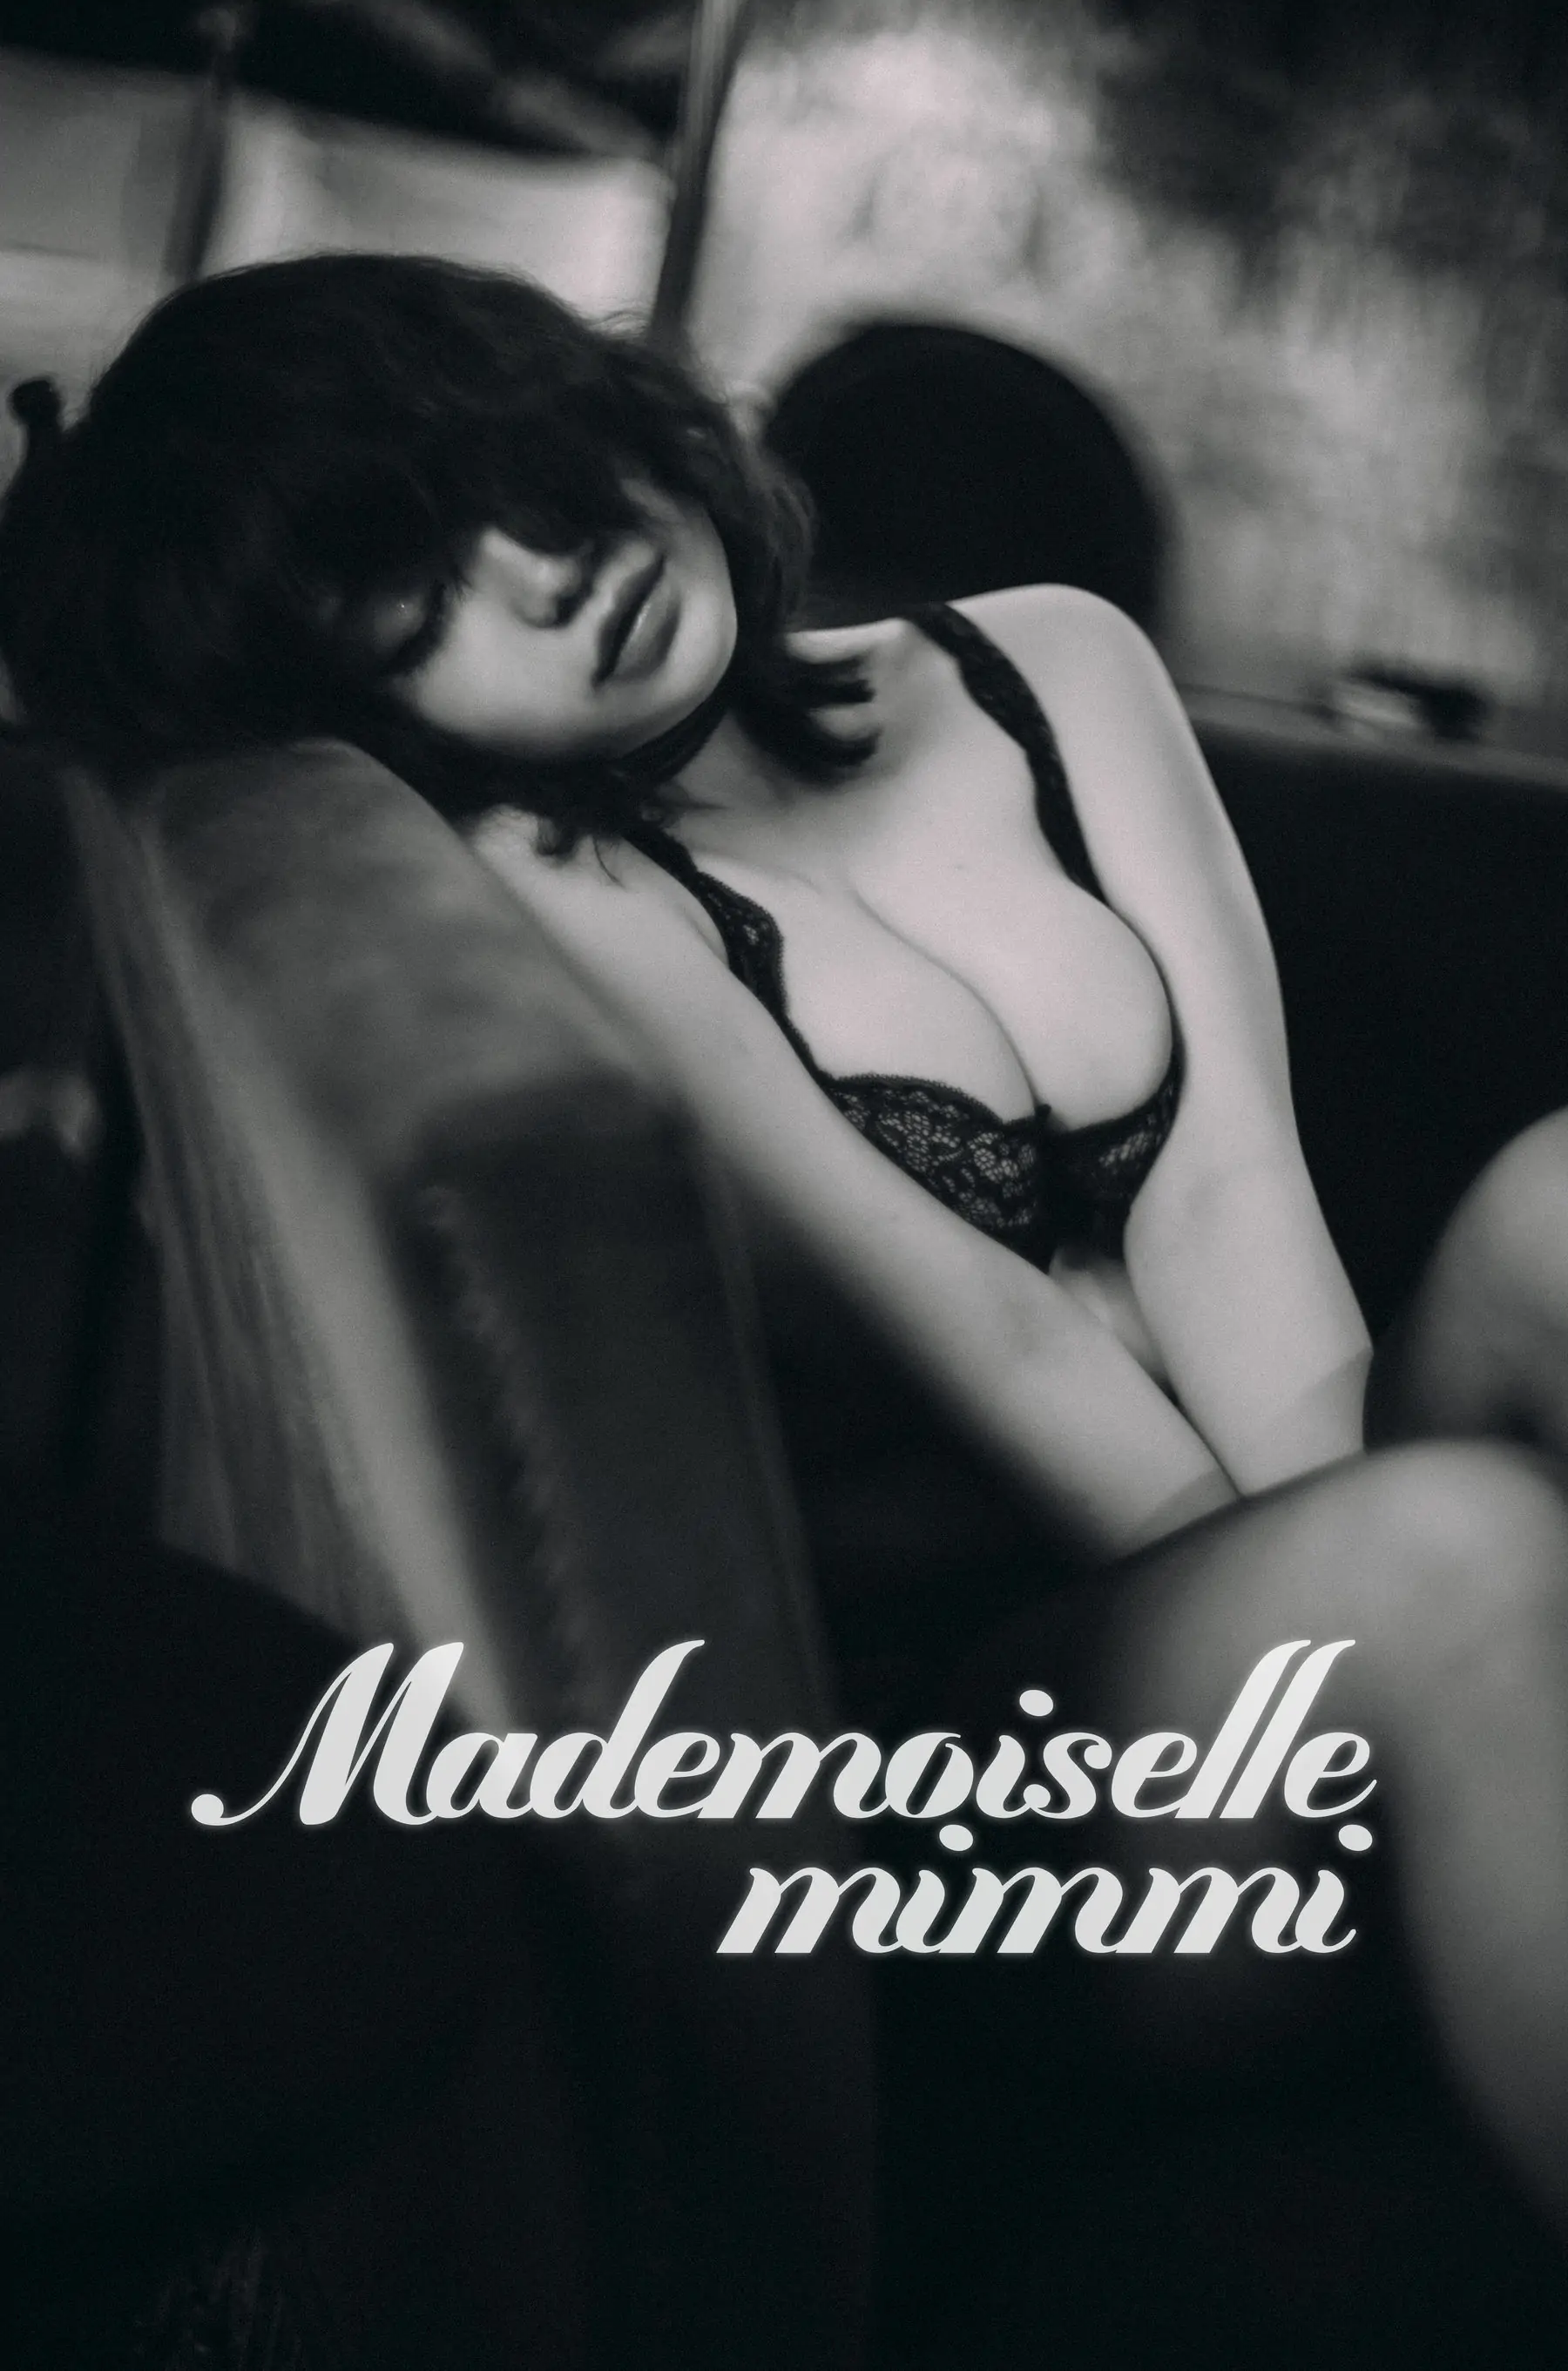 [DJAWAaaaa] Mimmi - Mademoiselle Mimmi